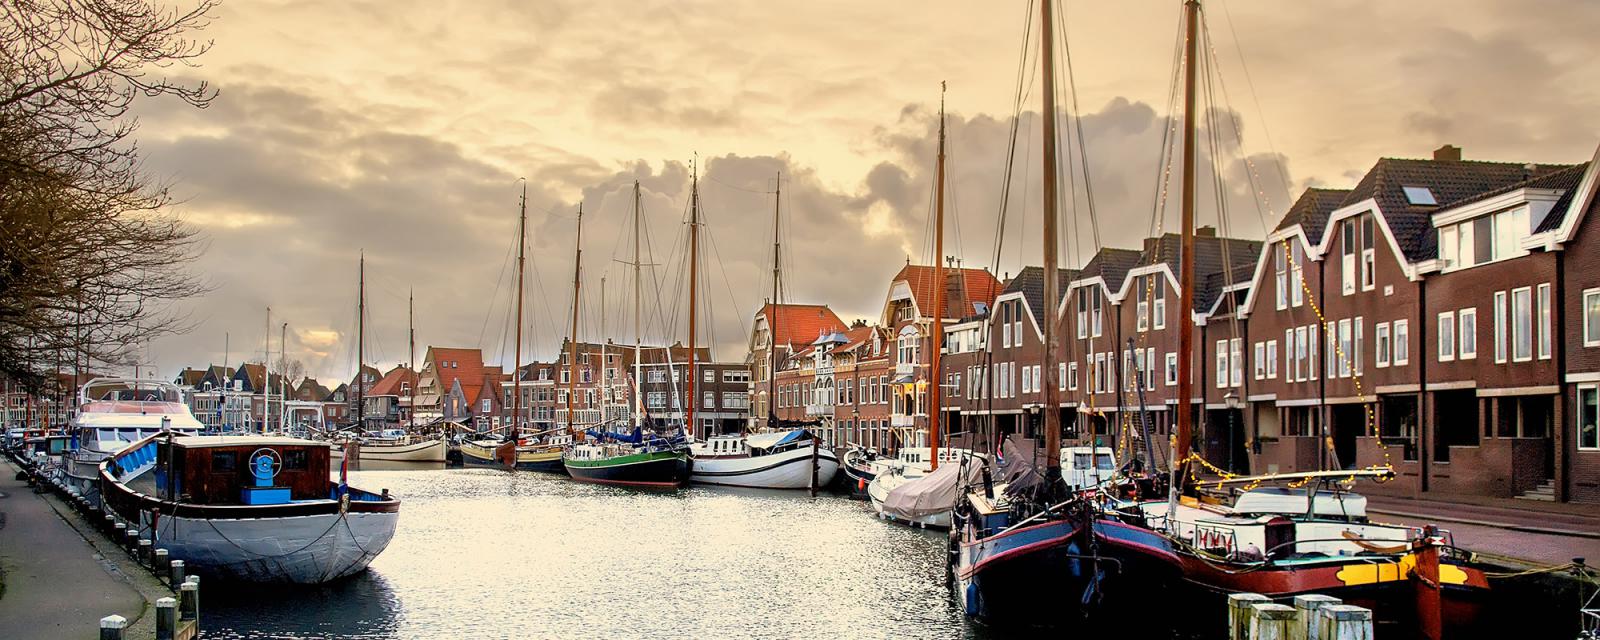 Hoorn: maritieme stad aan het IJsselmeer 